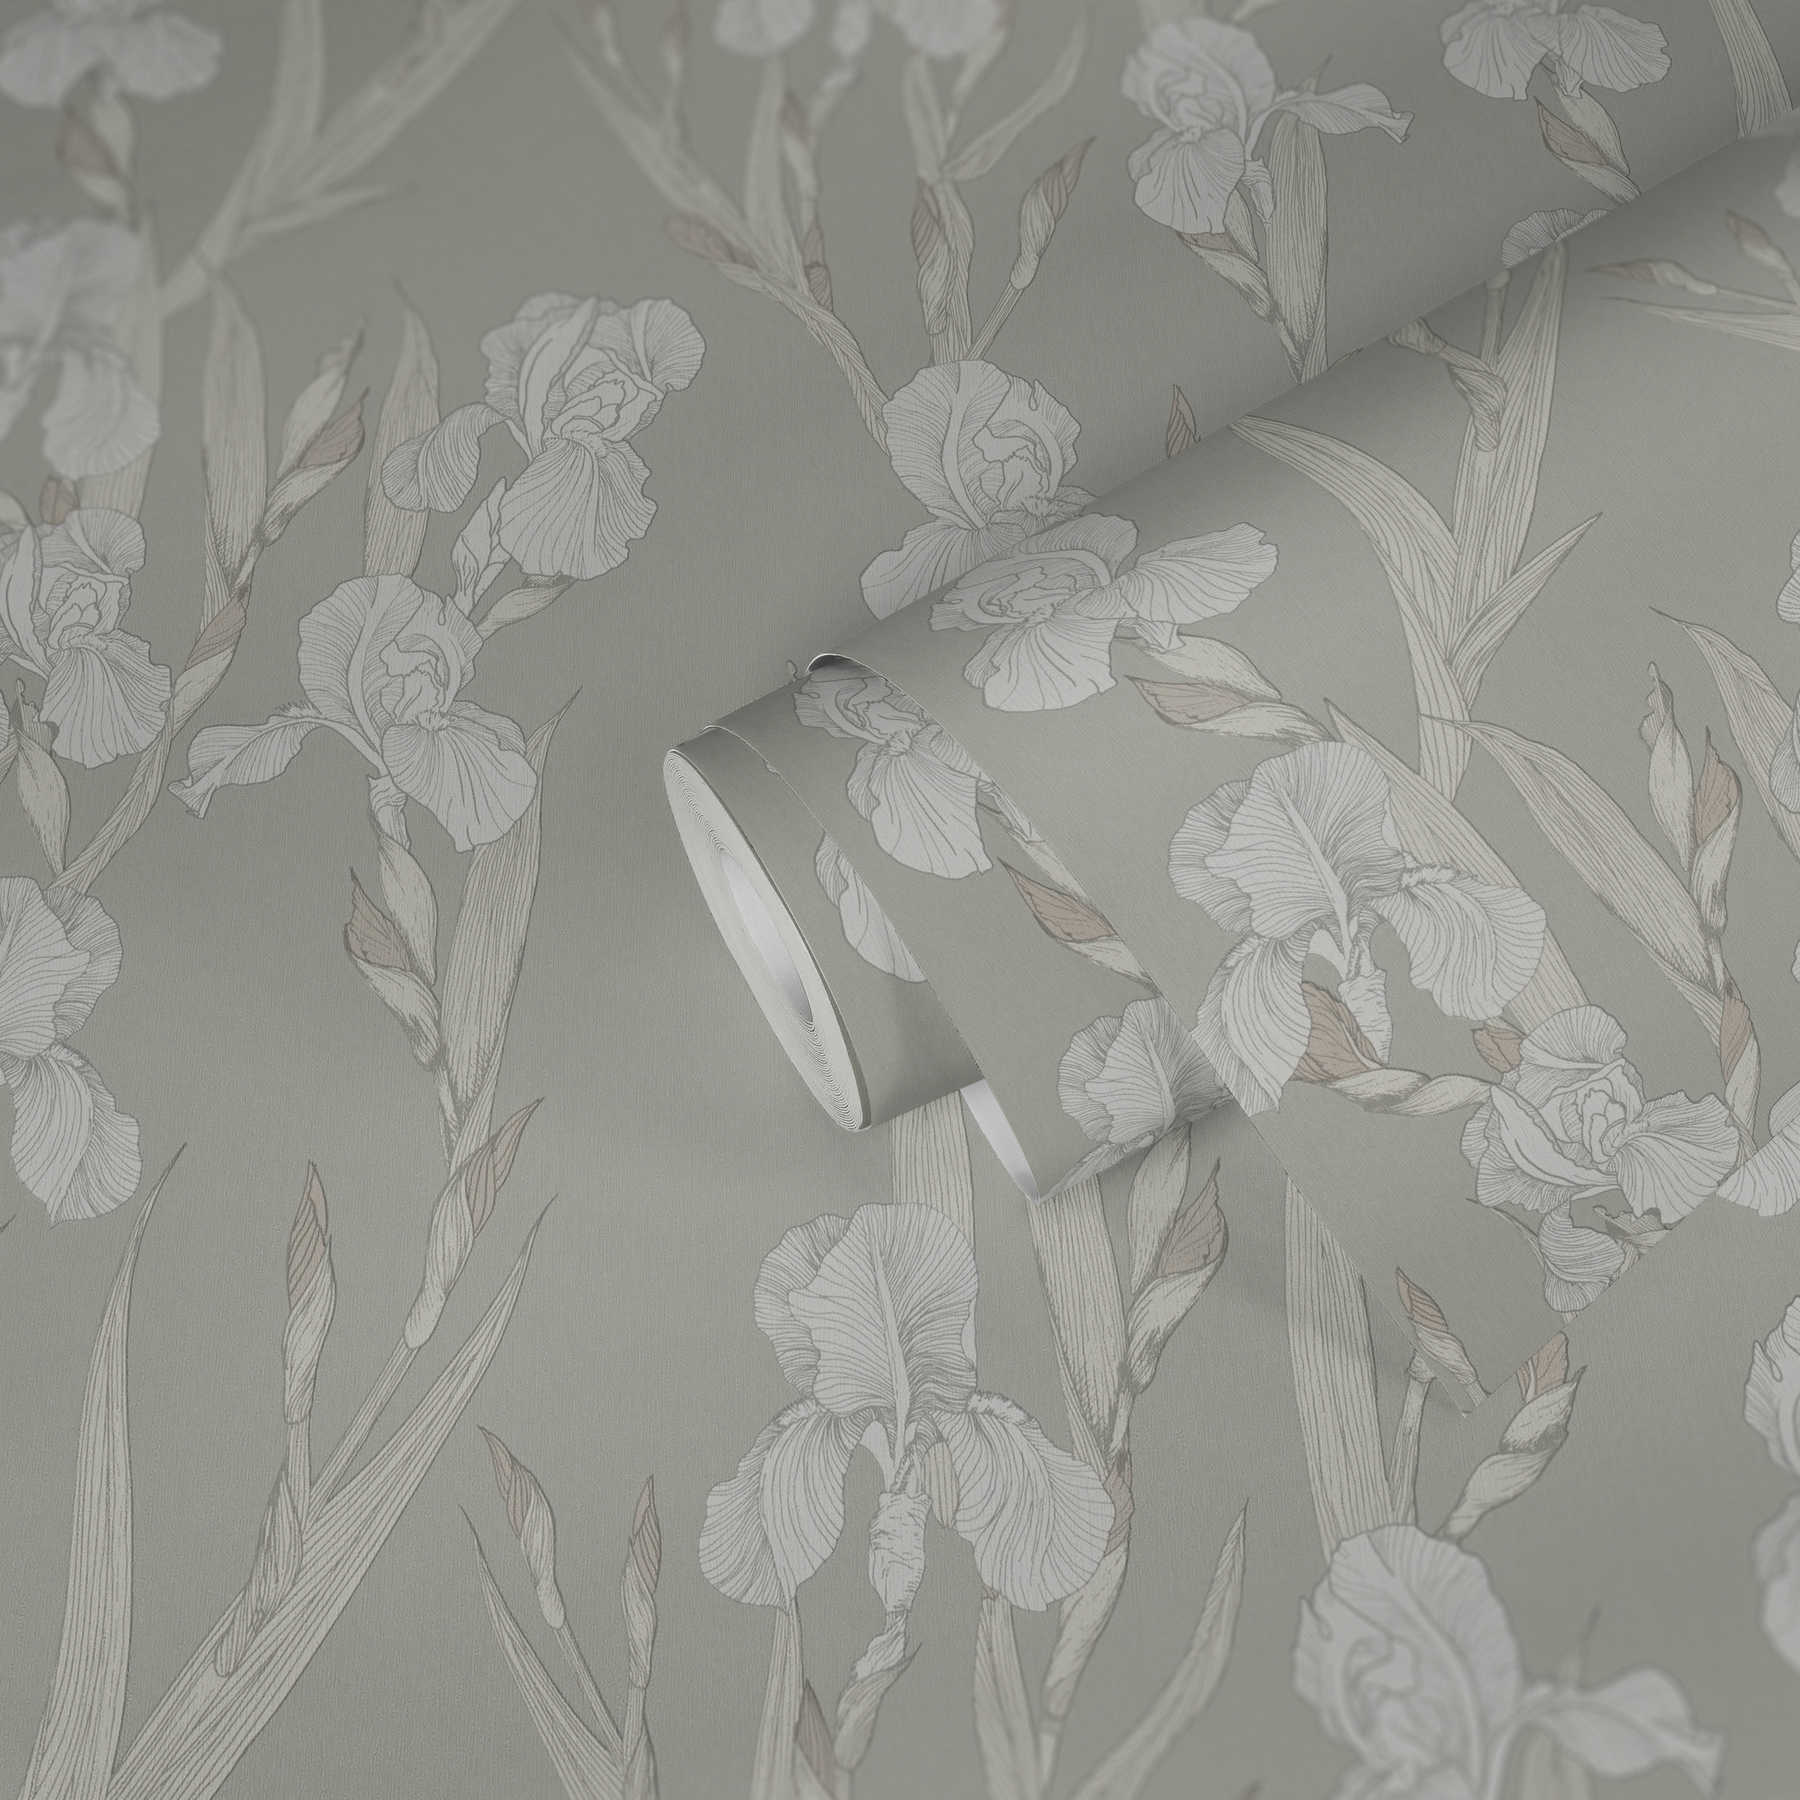             Bloemenbehang gestileerd, bloemenranken & modern design - grijs, wit
        